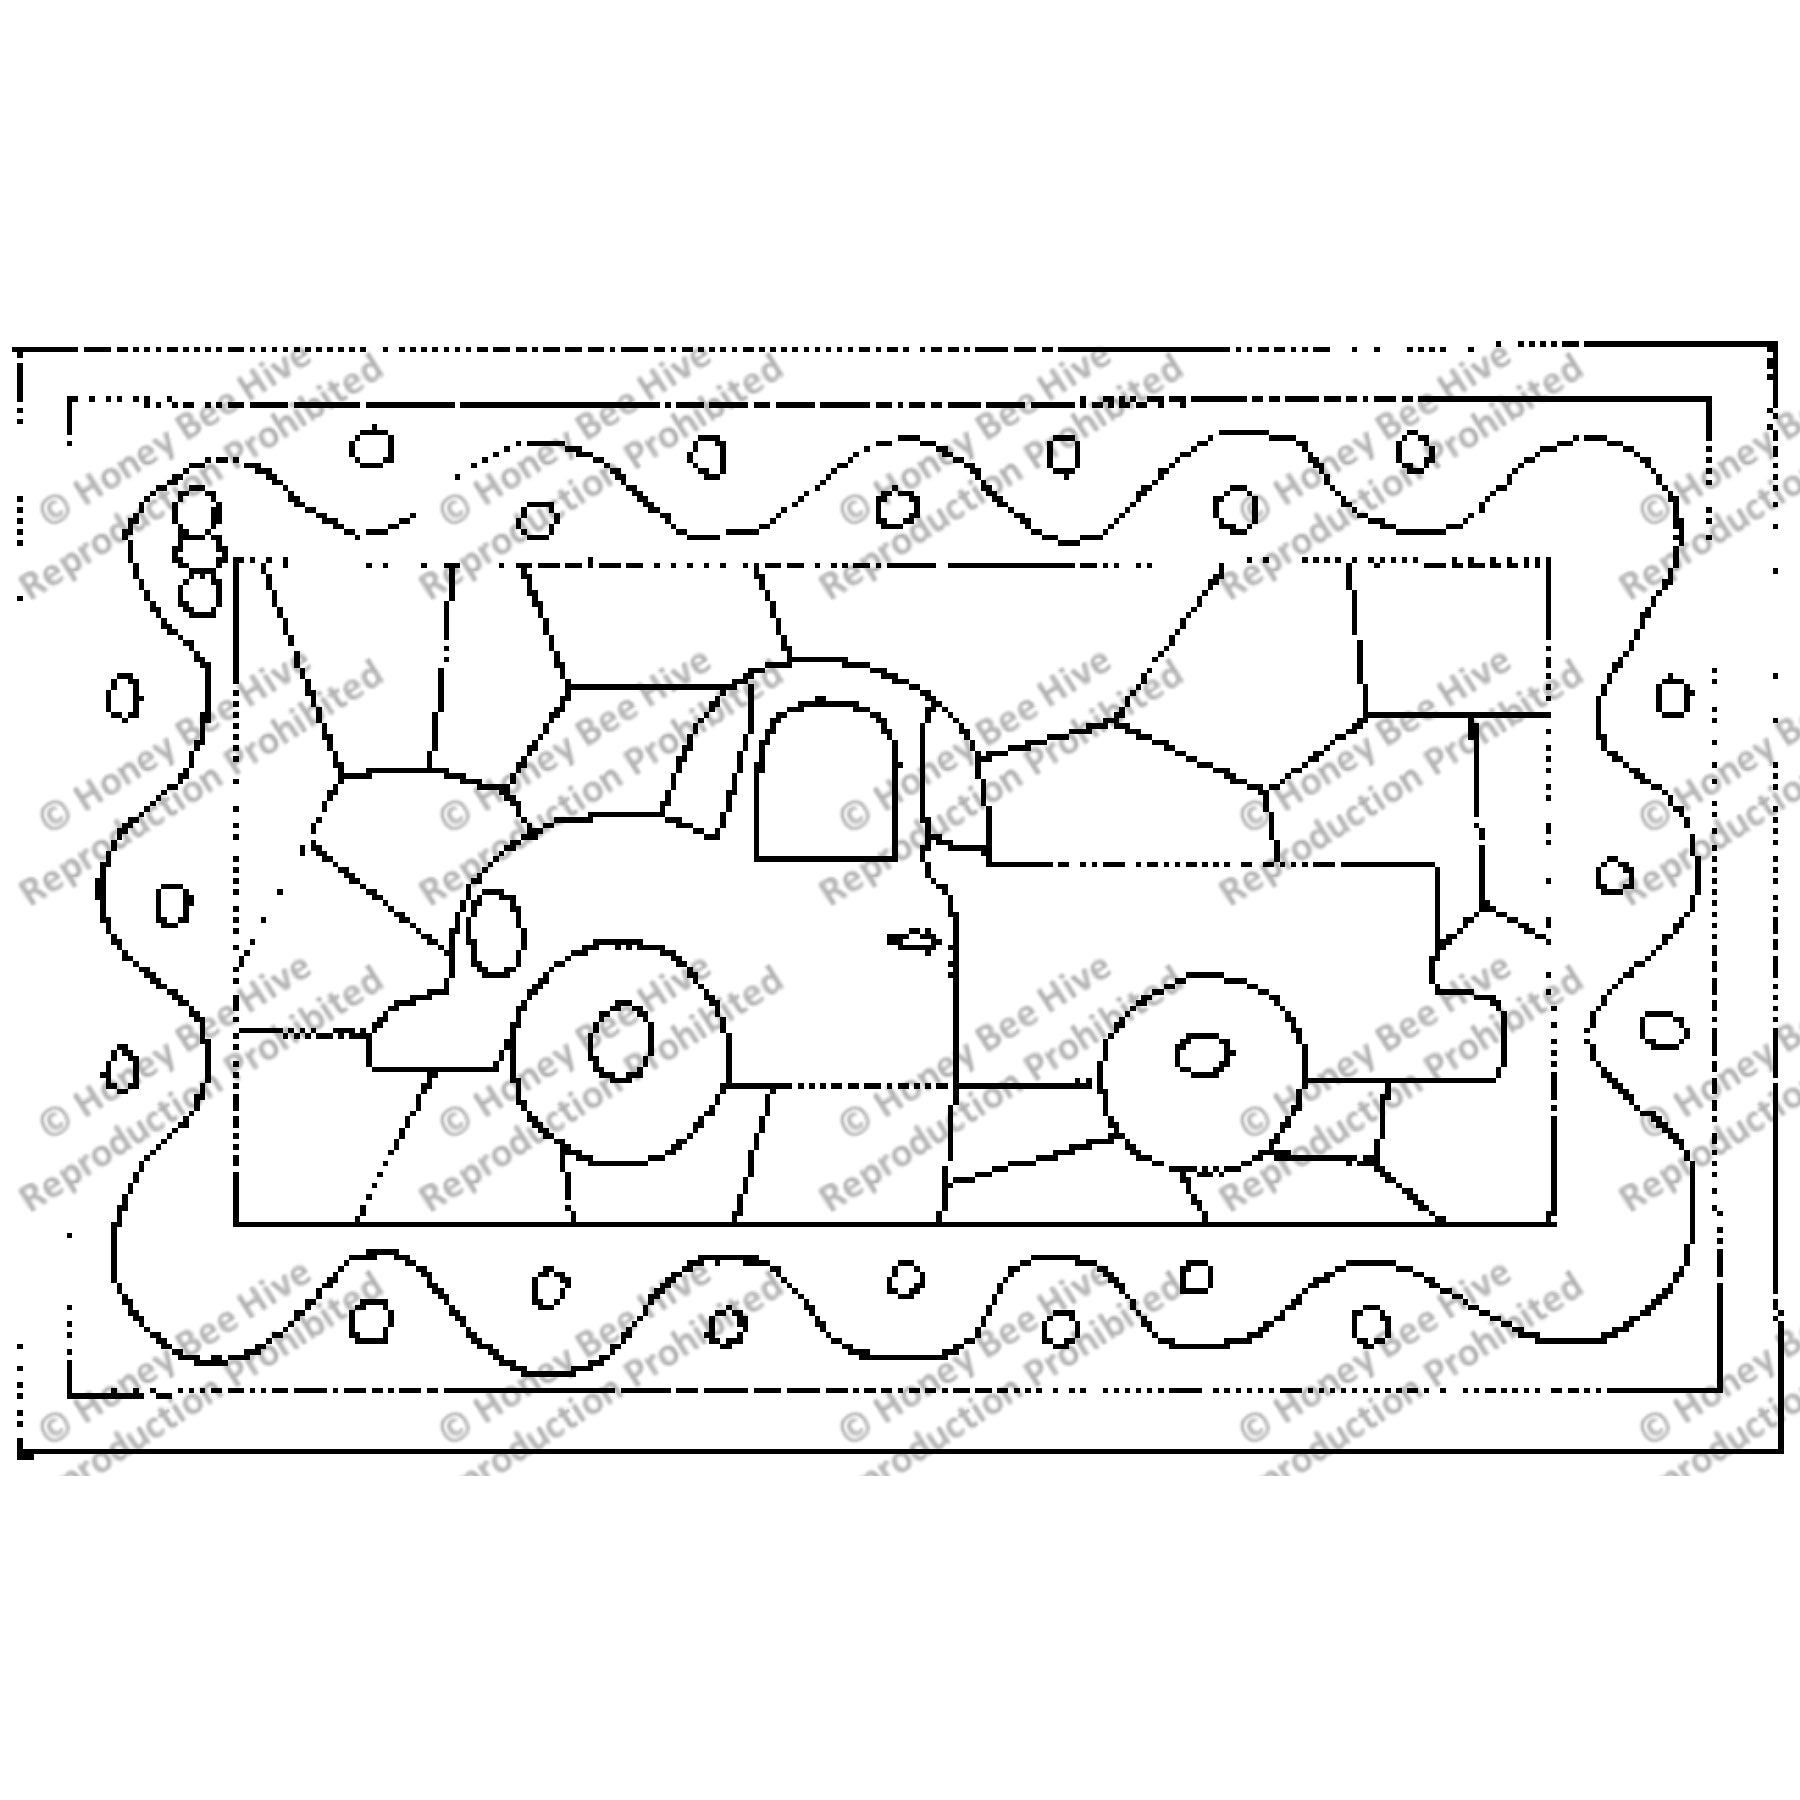 Motoring Mosaic, rug hooking pattern